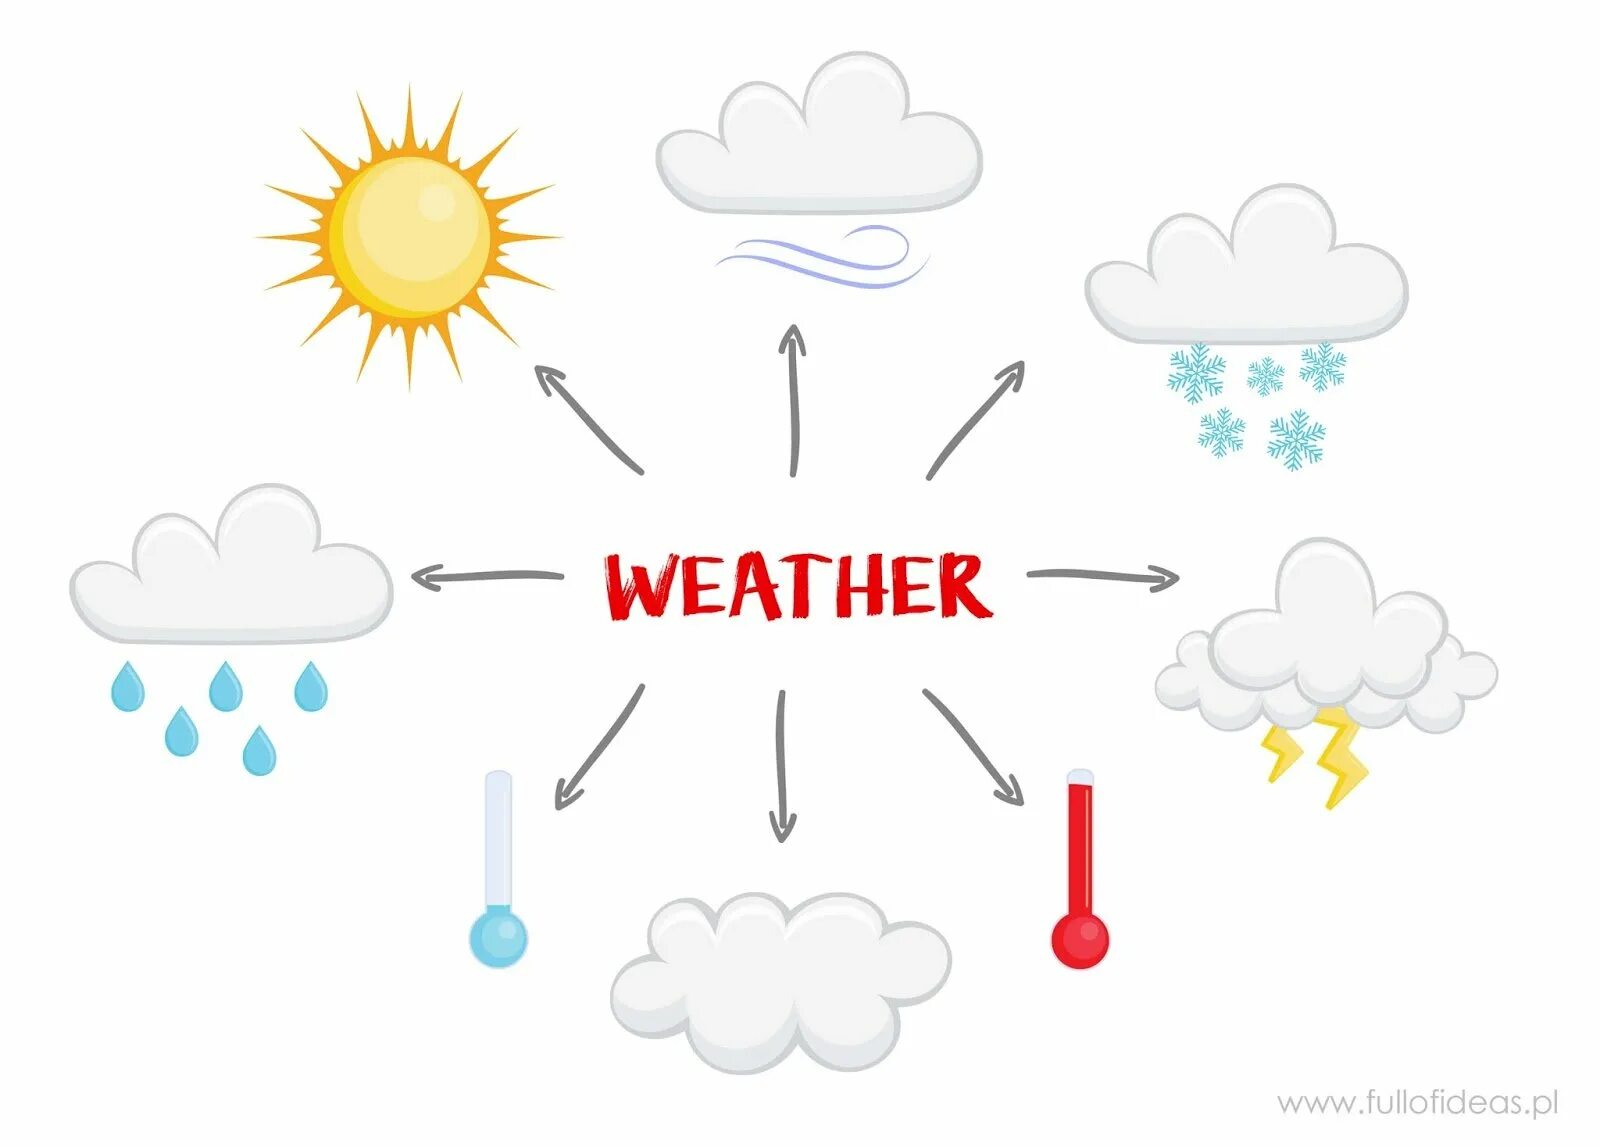 Https weather com wx today. Weather для детей. Погодные условия рисунок. Схема с weather. Погодные условия картинки для детей.